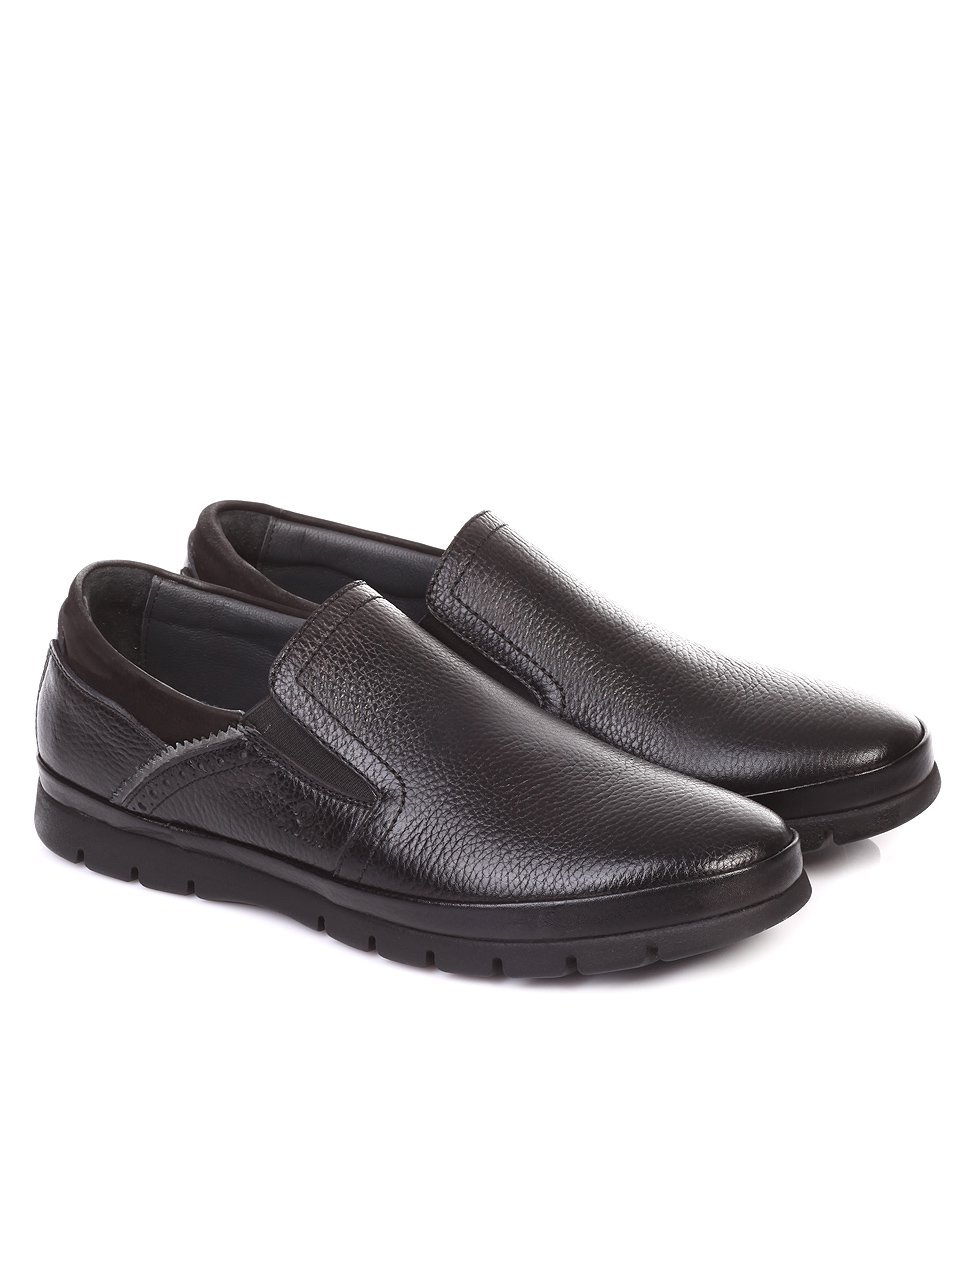 Ежедневни мъжки обувки от естествена кожа в черно I878115-2353 black